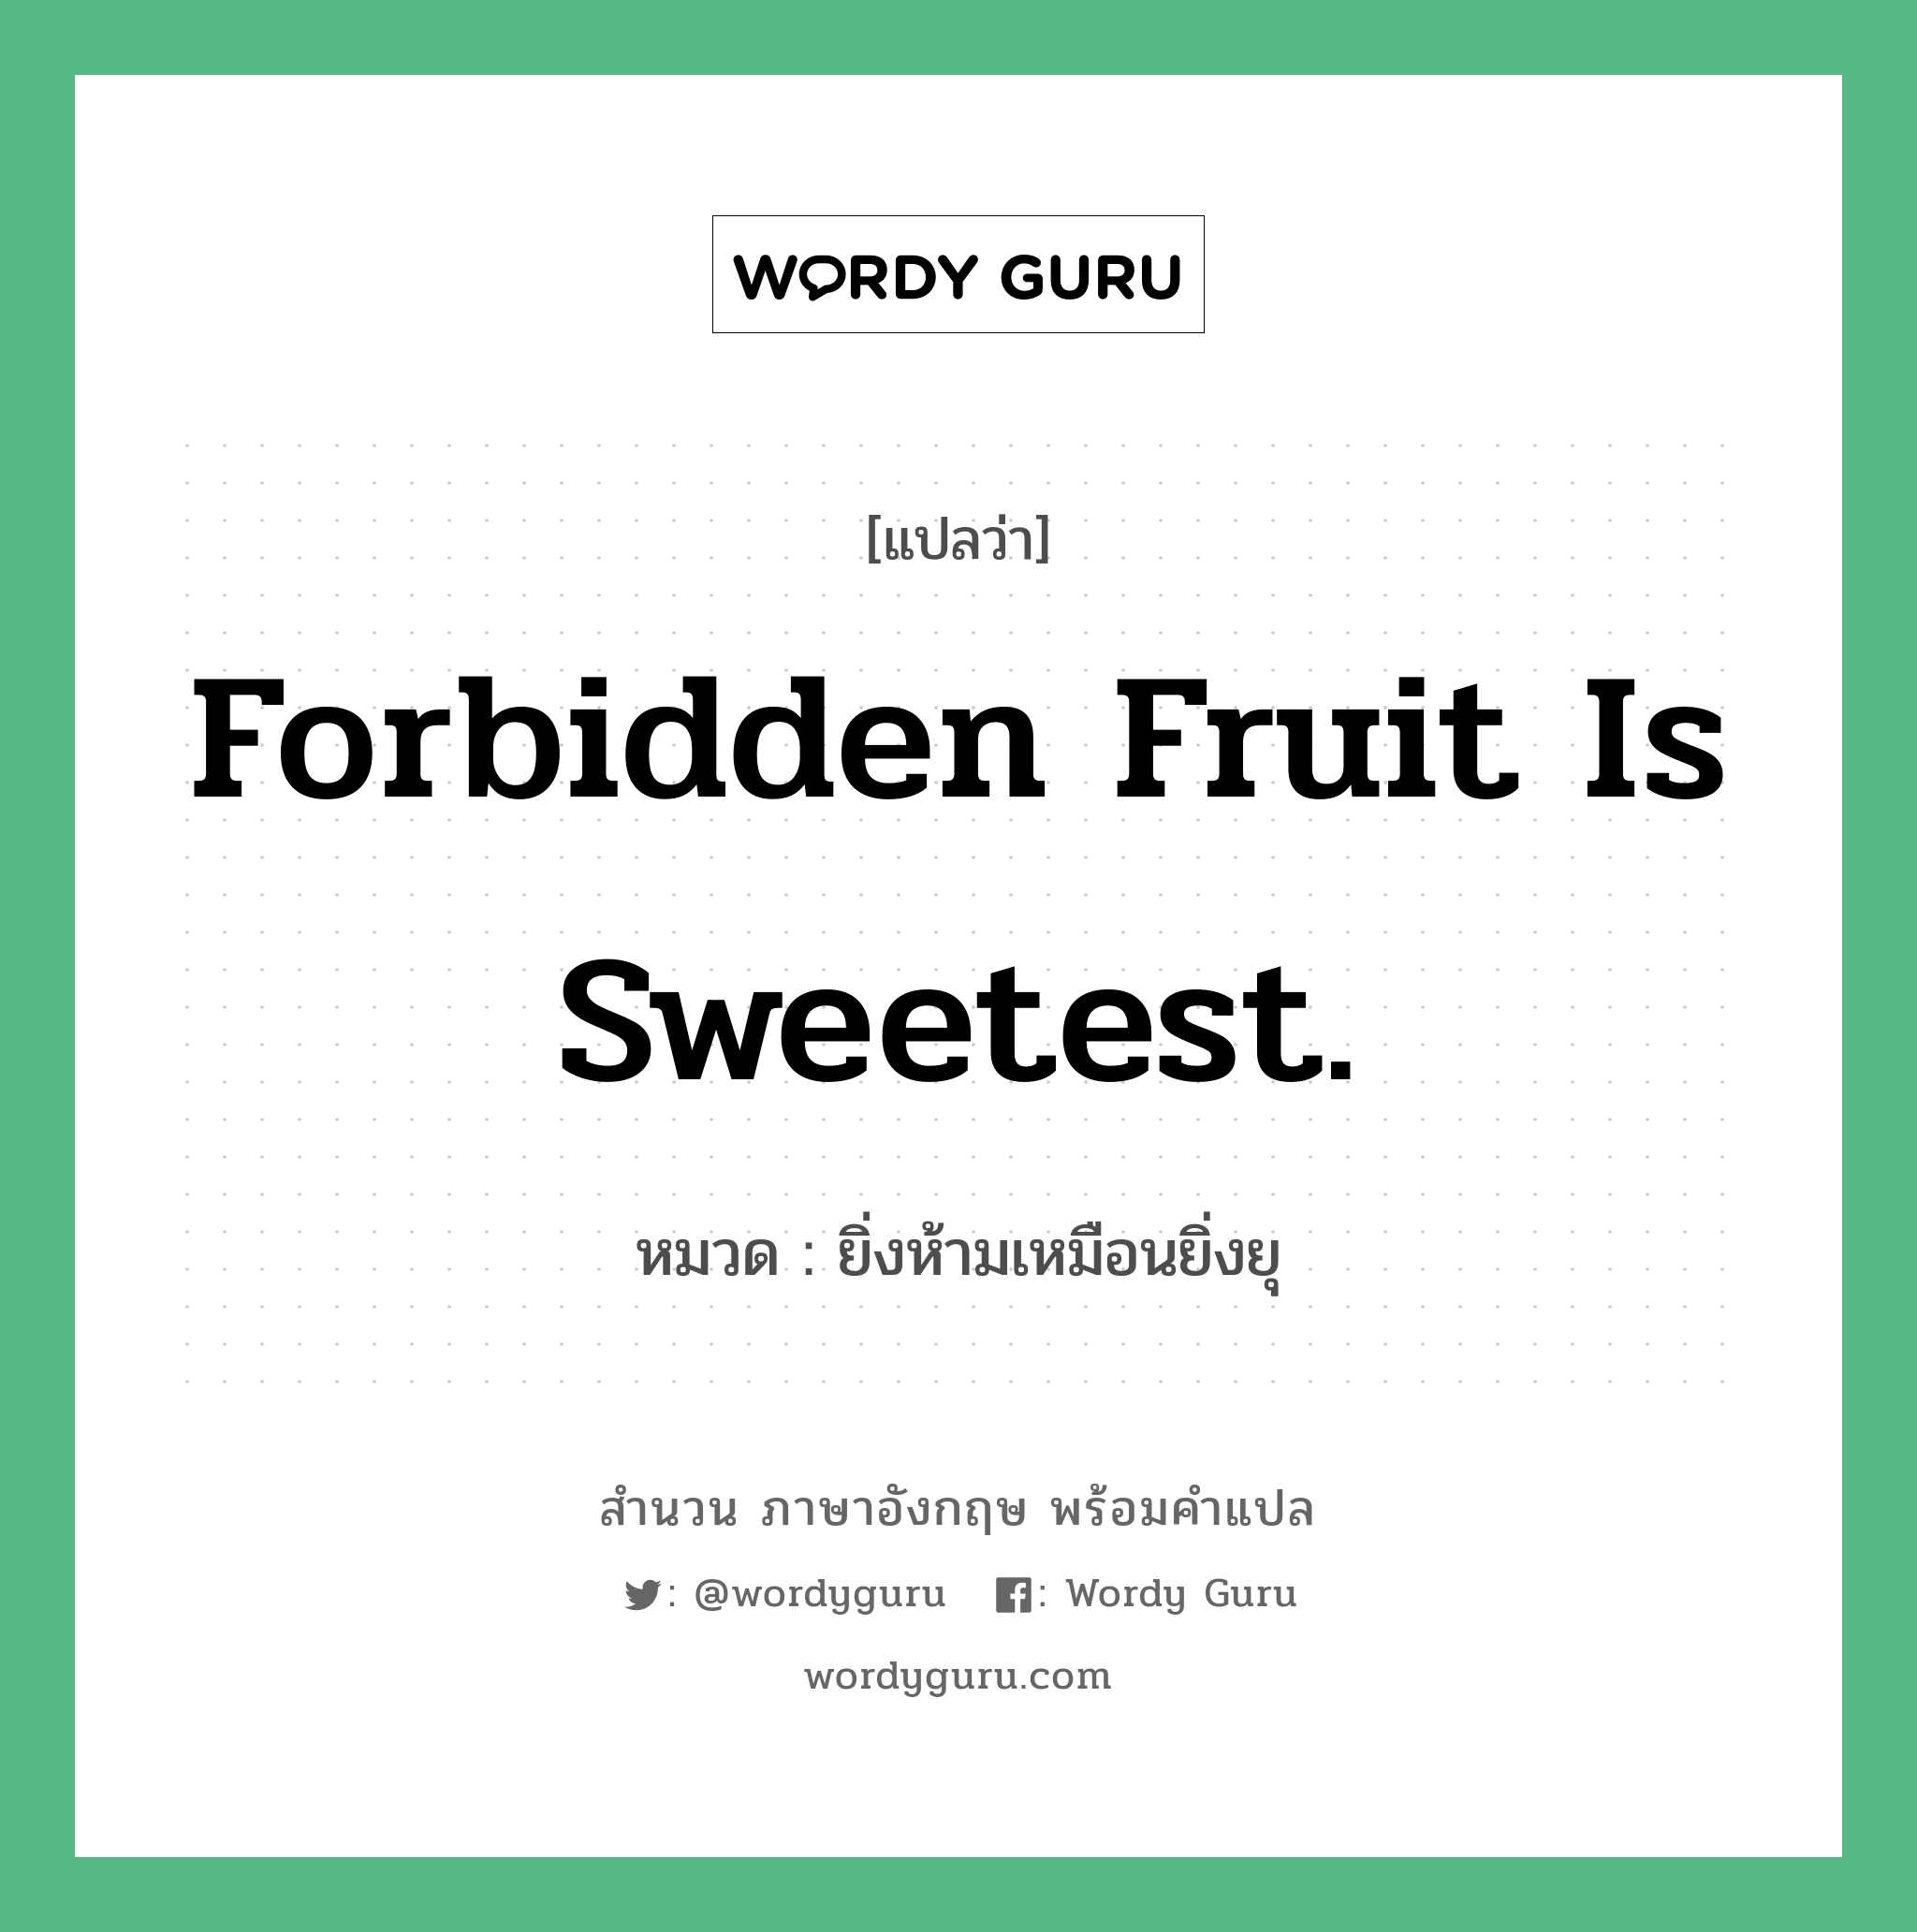 ยิ่งห้ามเหมือนยิ่งยุ ภาษาอังกฤษ?, สำนวนภาษาอังกฤษ ยิ่งห้ามเหมือนยิ่งยุ แปลว่า ยิ่งห้ามเหมือนยิ่งยุ หมวด Forbidden fruit is sweetest. คำสุภาษิต ภาษาอังกฤษ หมวด คำสุภาษิต ภาษาอังกฤษ